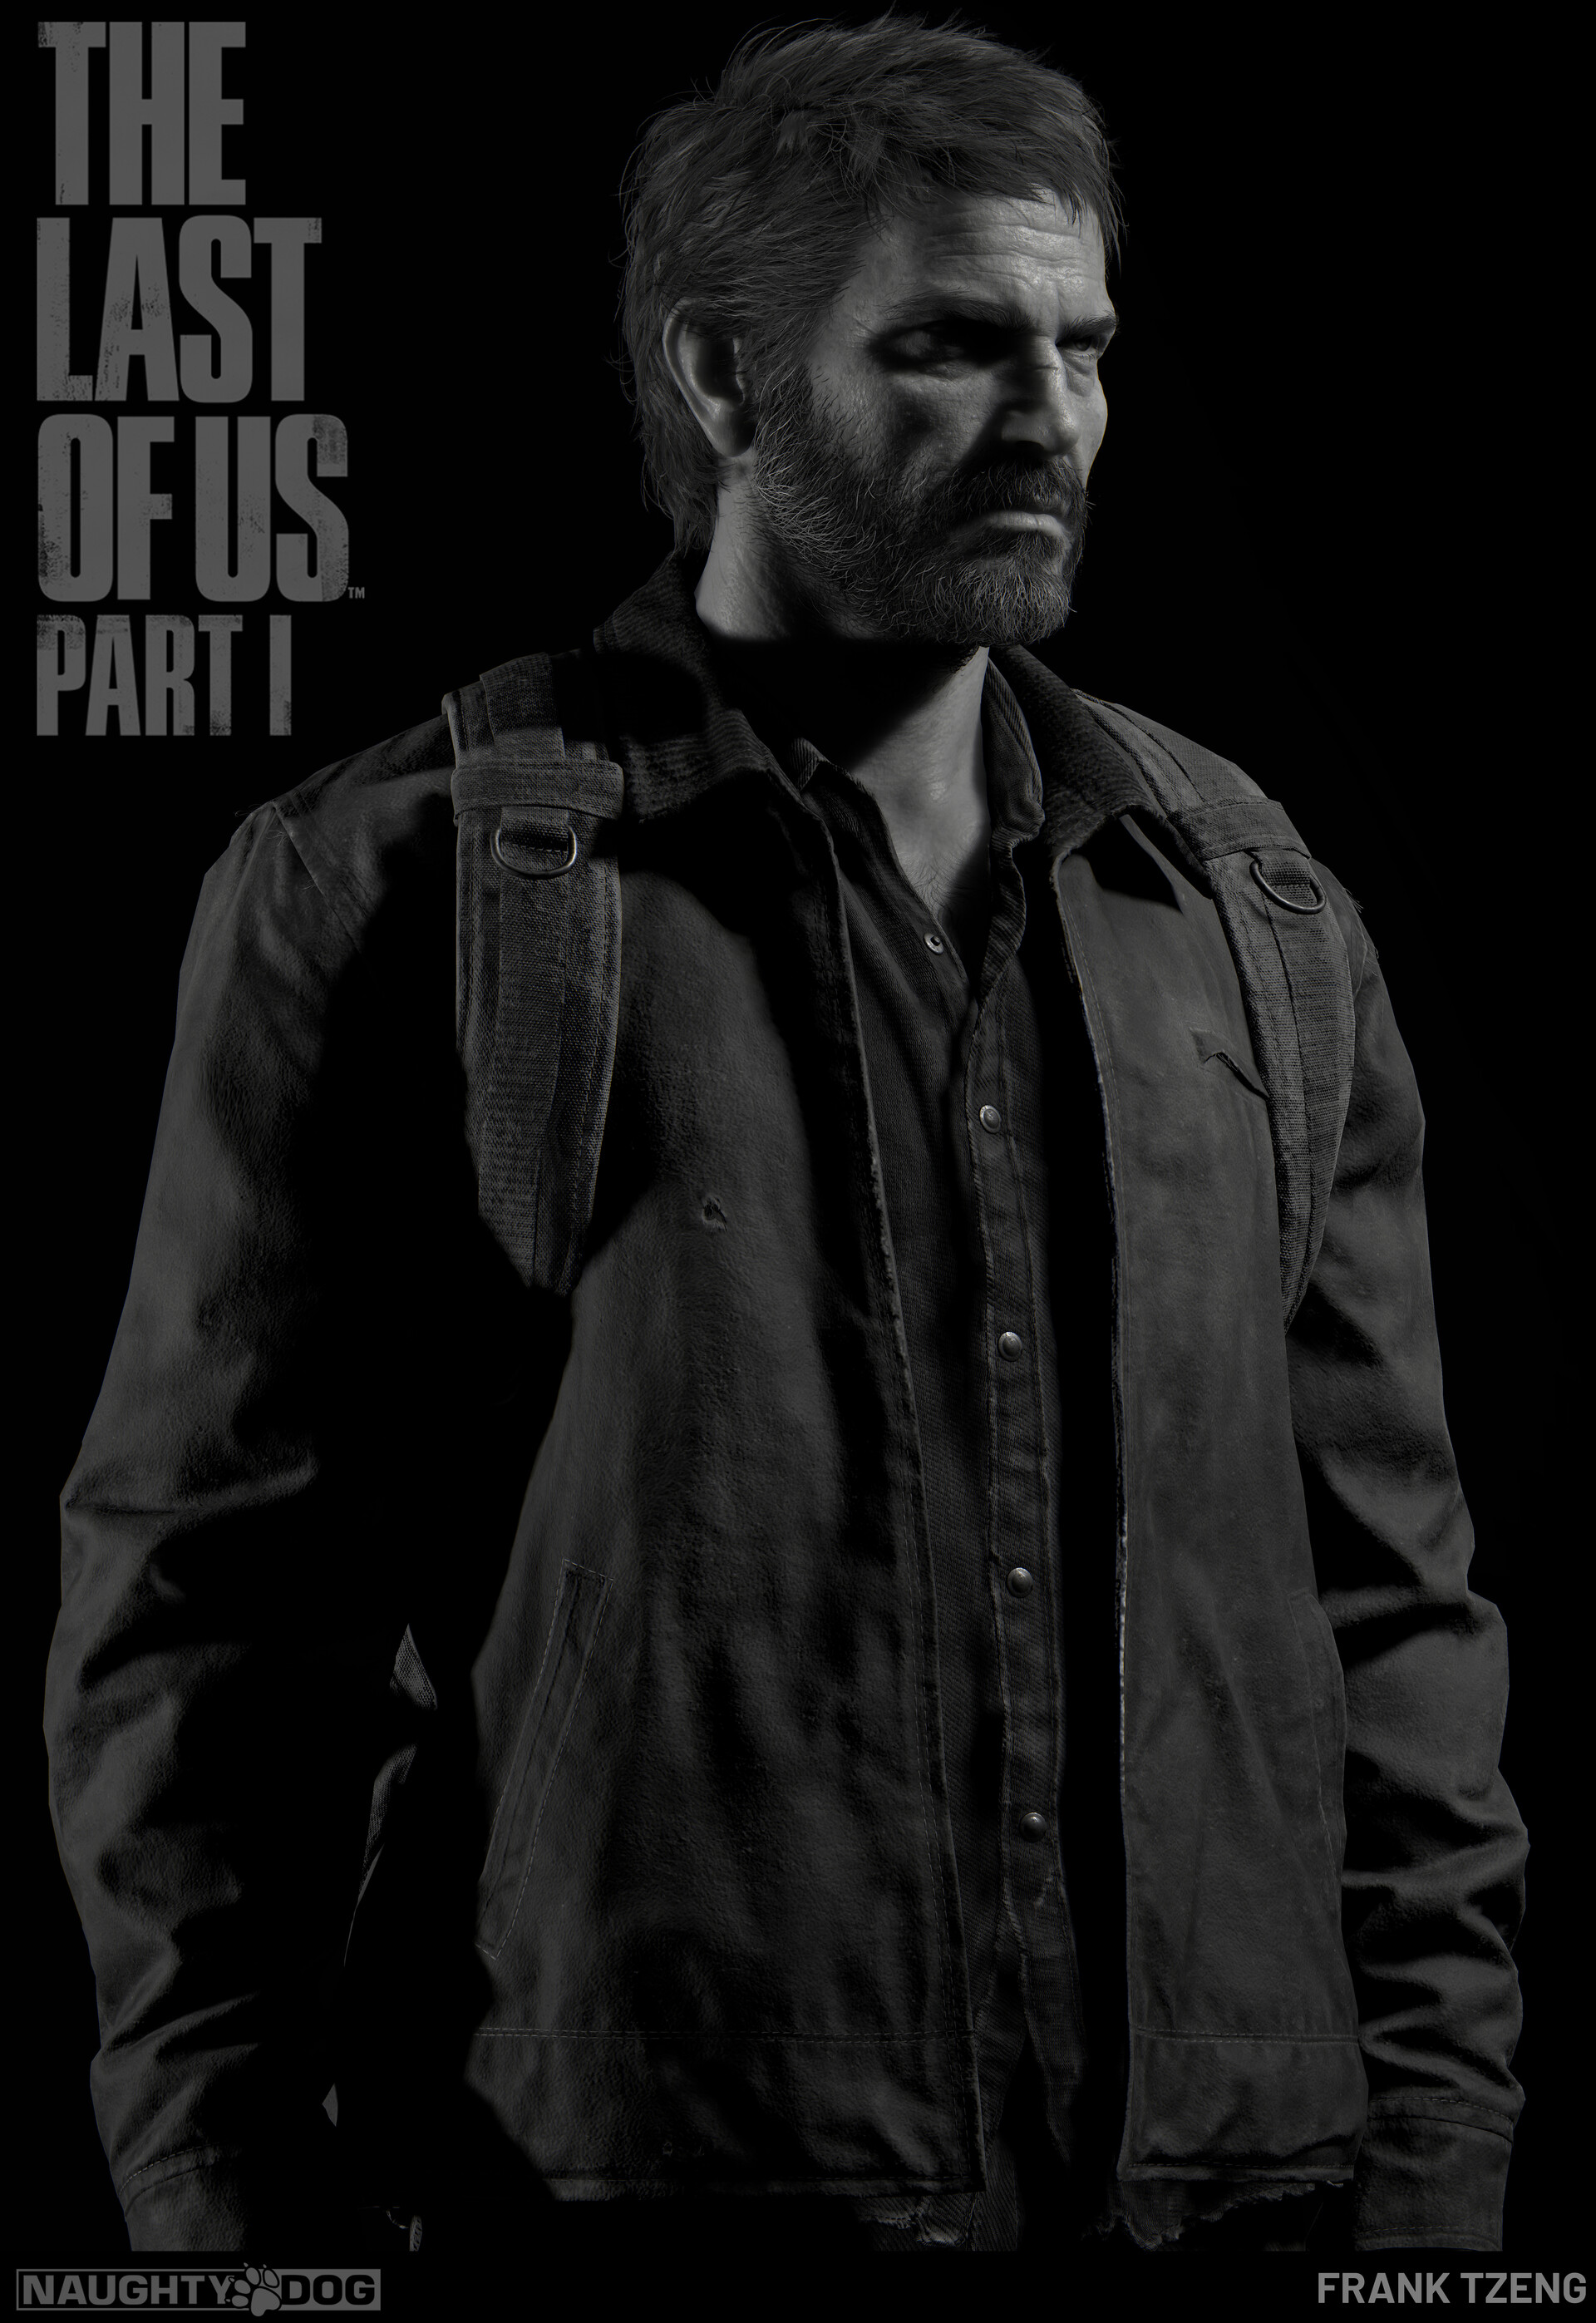 ArtStation - The Last of Us Part I: Joel Fall Costume